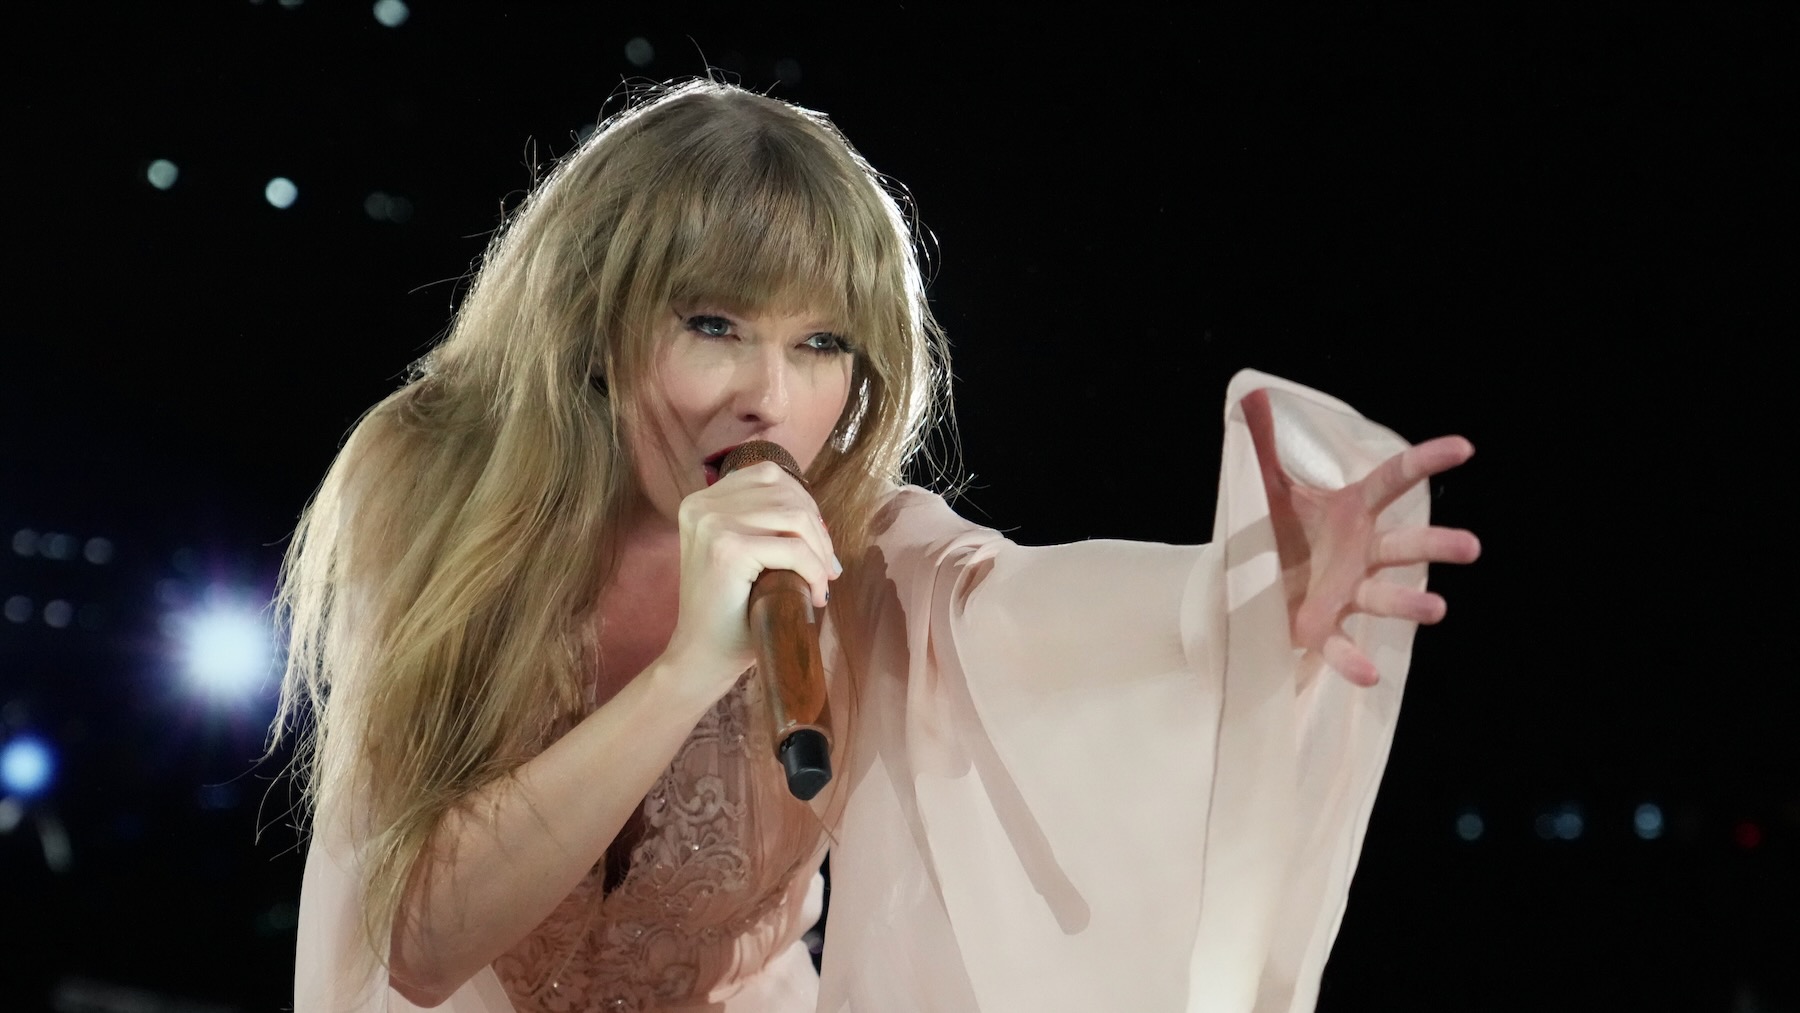 Le film de concert « The Eras Tour » de Taylor Swift capture la magie de son spectacle live record